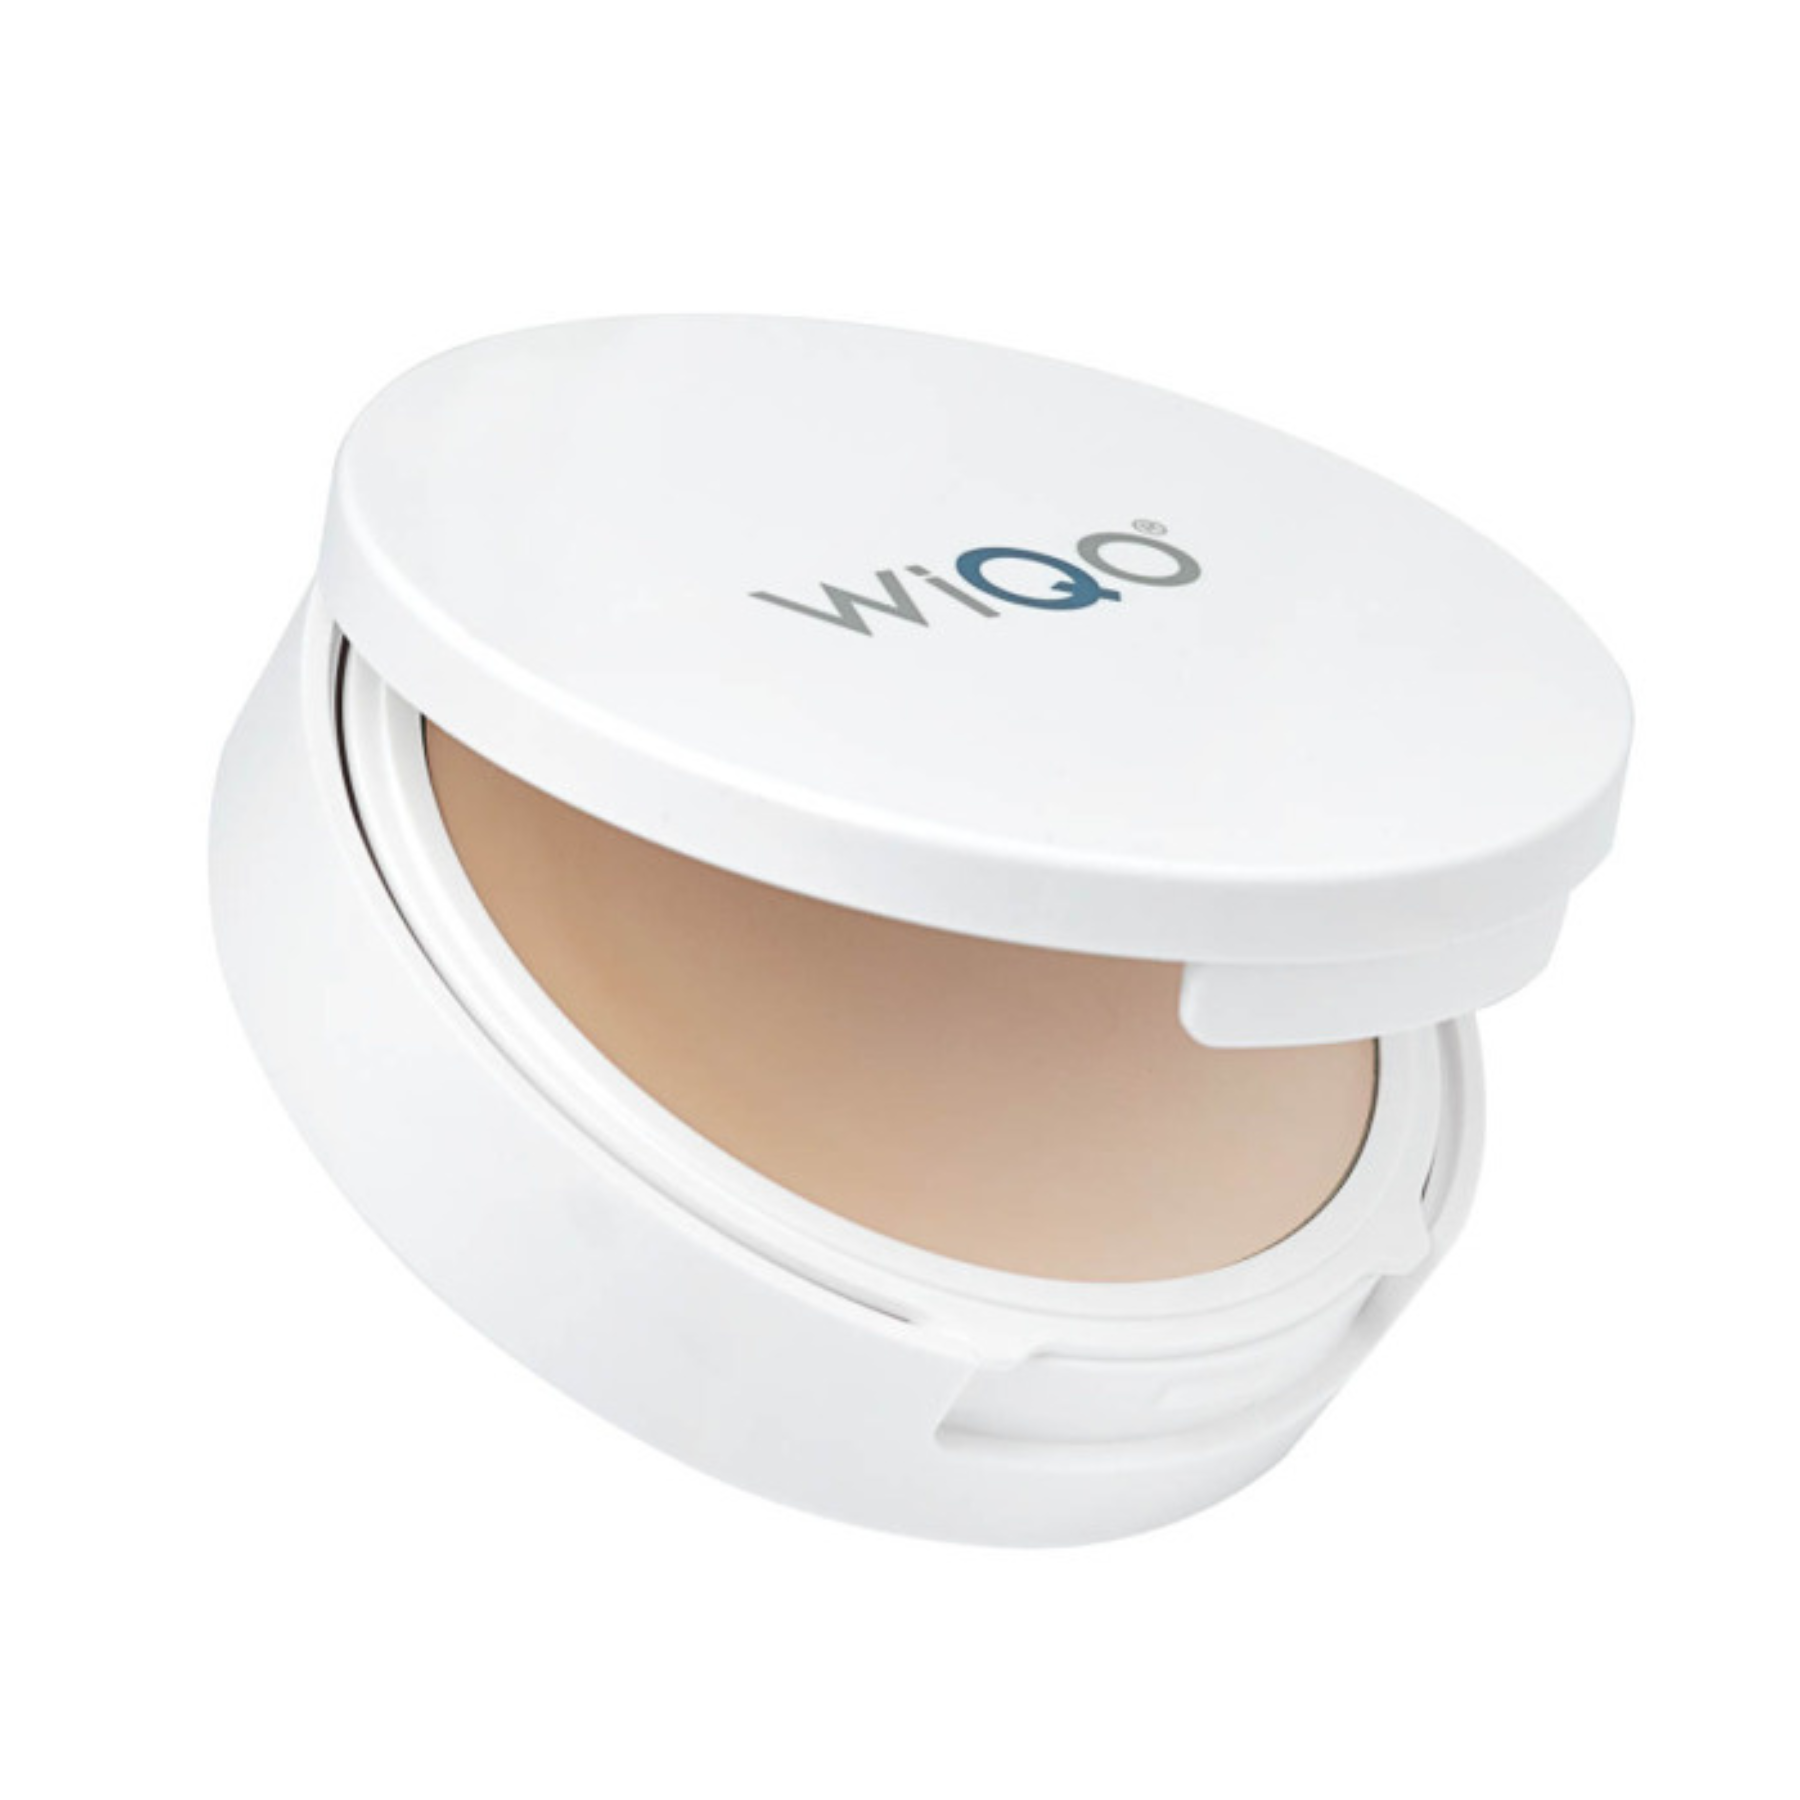 Крем-пудра SPF50 WiQo ICP Cream-Invisible Colored Protective, 10.5мл, Light